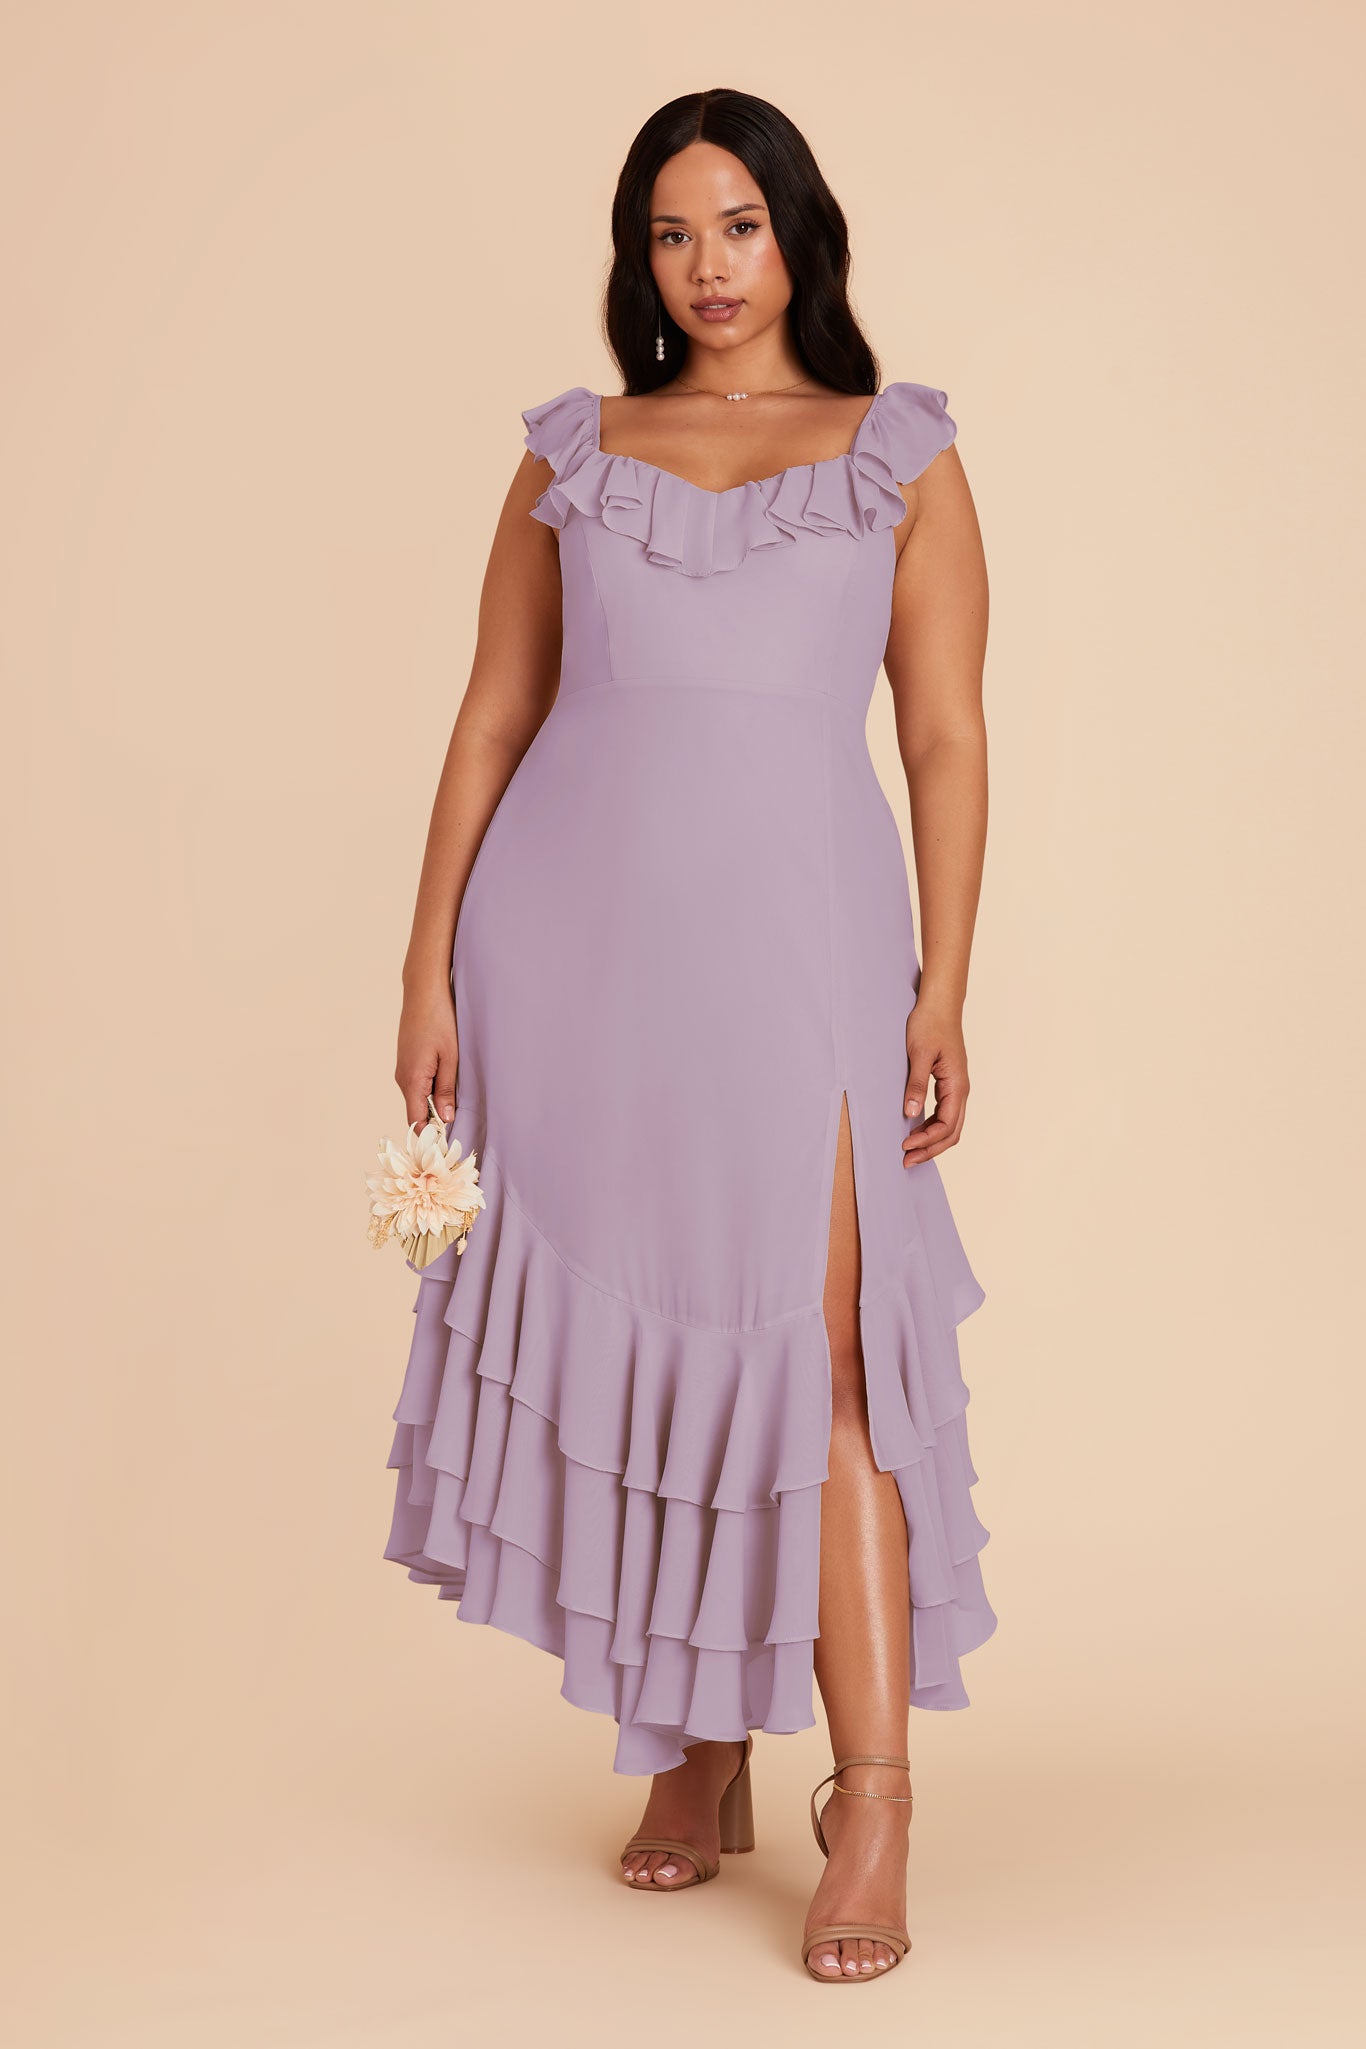 Lavender Ginny Chiffon Dress by Birdy Grey